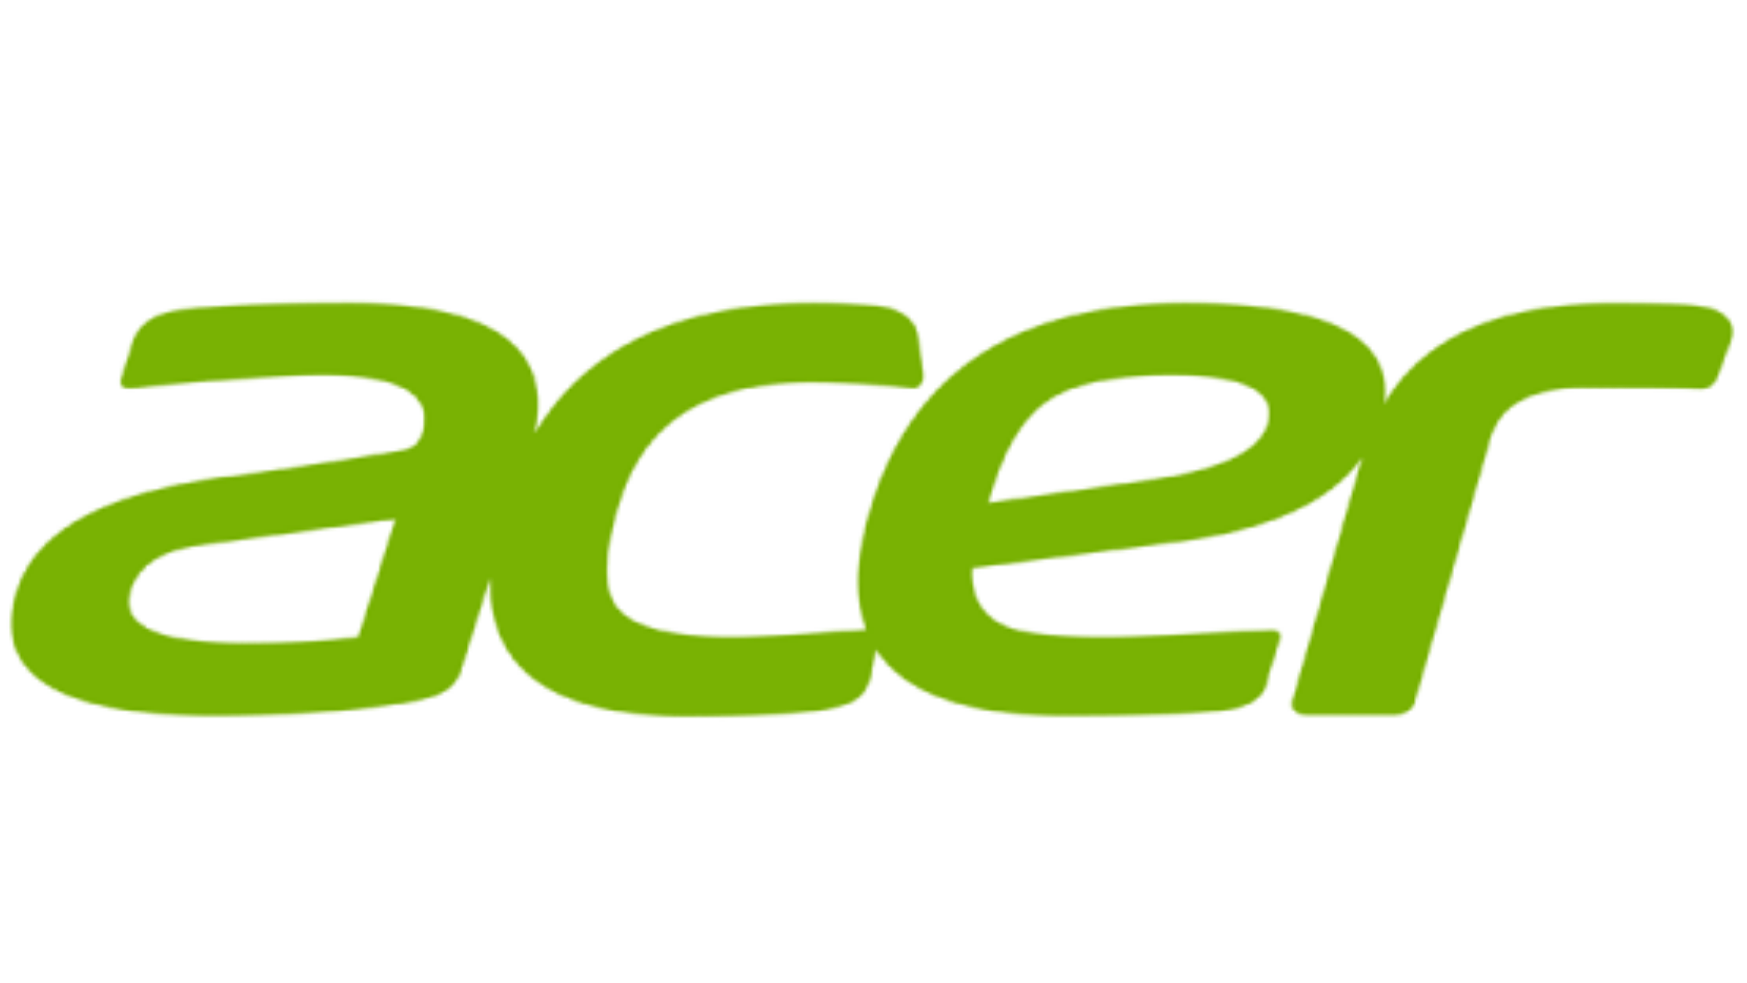 Acer.com: 300 Euro Rabatt im Sale & 5 Prozent Gutschein